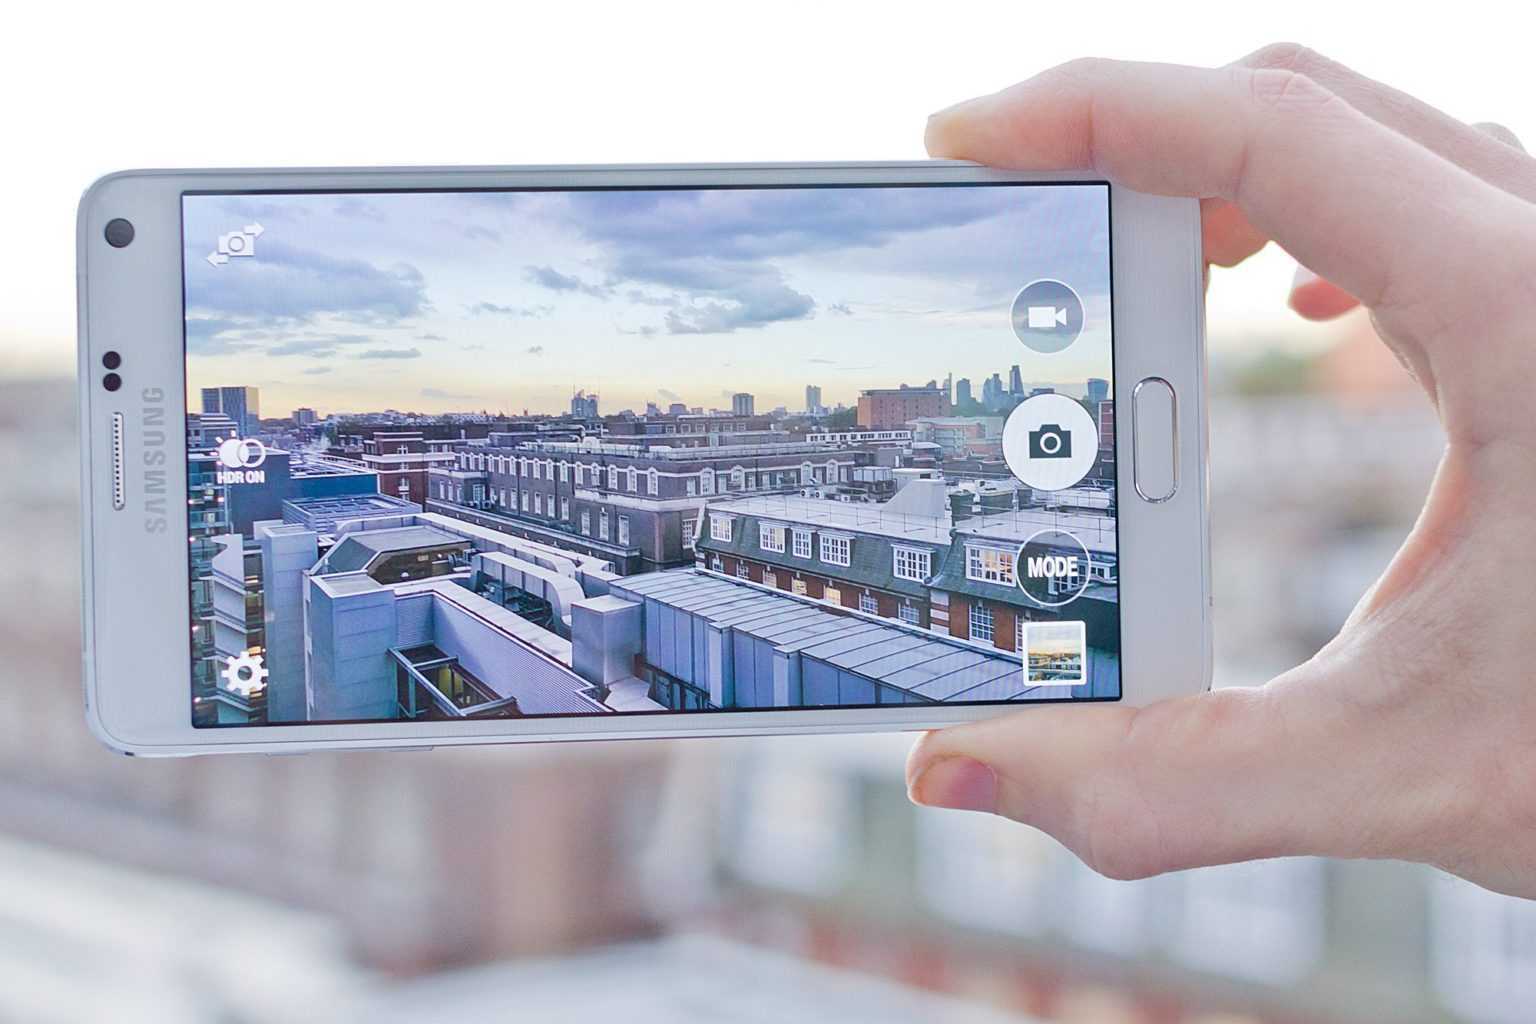 Samsung с хорошей камерой: рейтинг топ-11 лучших смартфонов, их описание